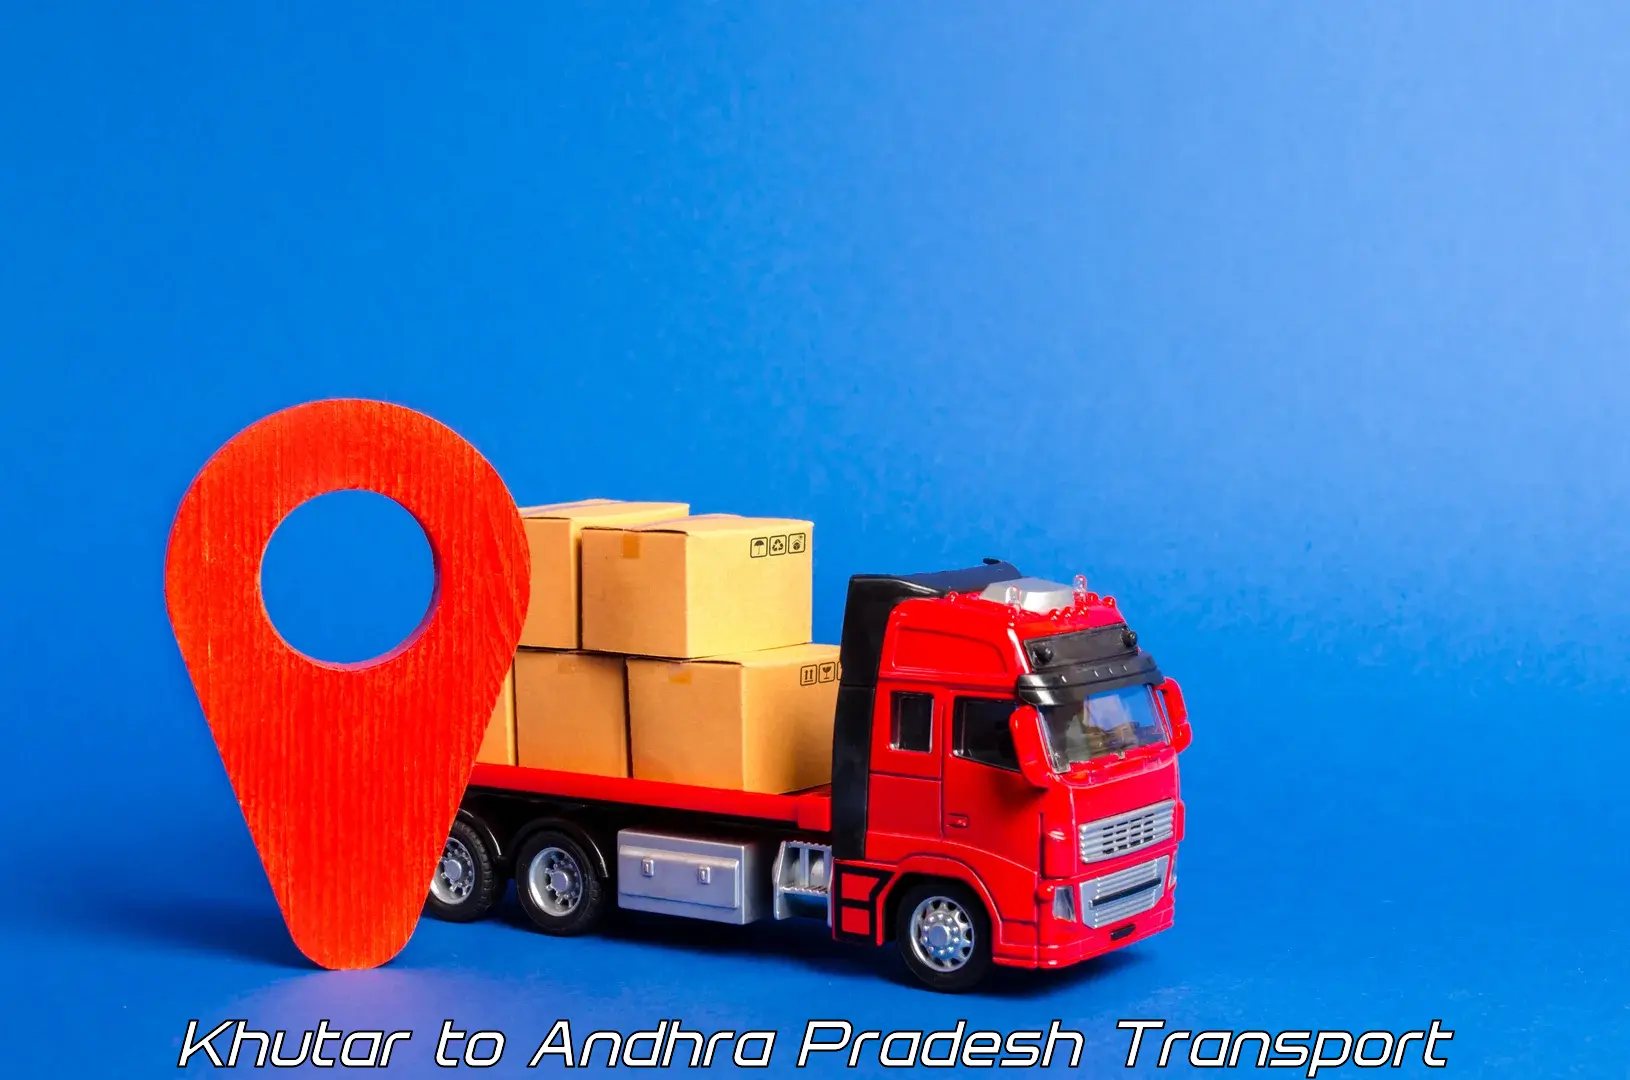 Commercial transport service Khutar to Tirupati